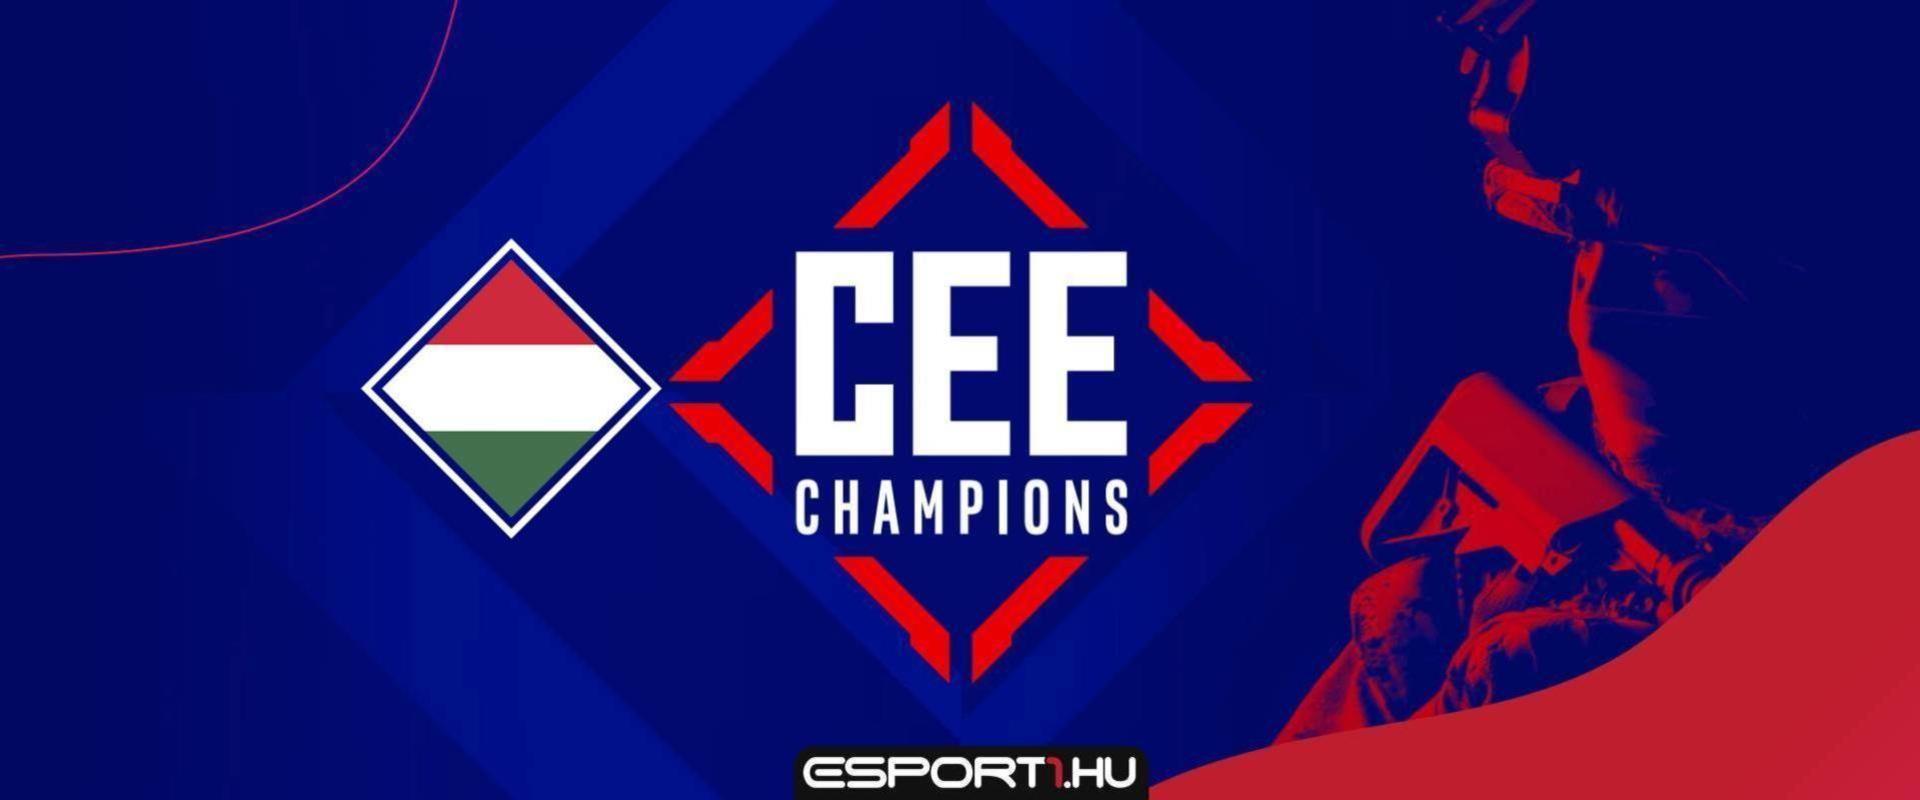 Szurkolj kedvenceidnek a CEE Champions magyar zárt selejtezőjén is